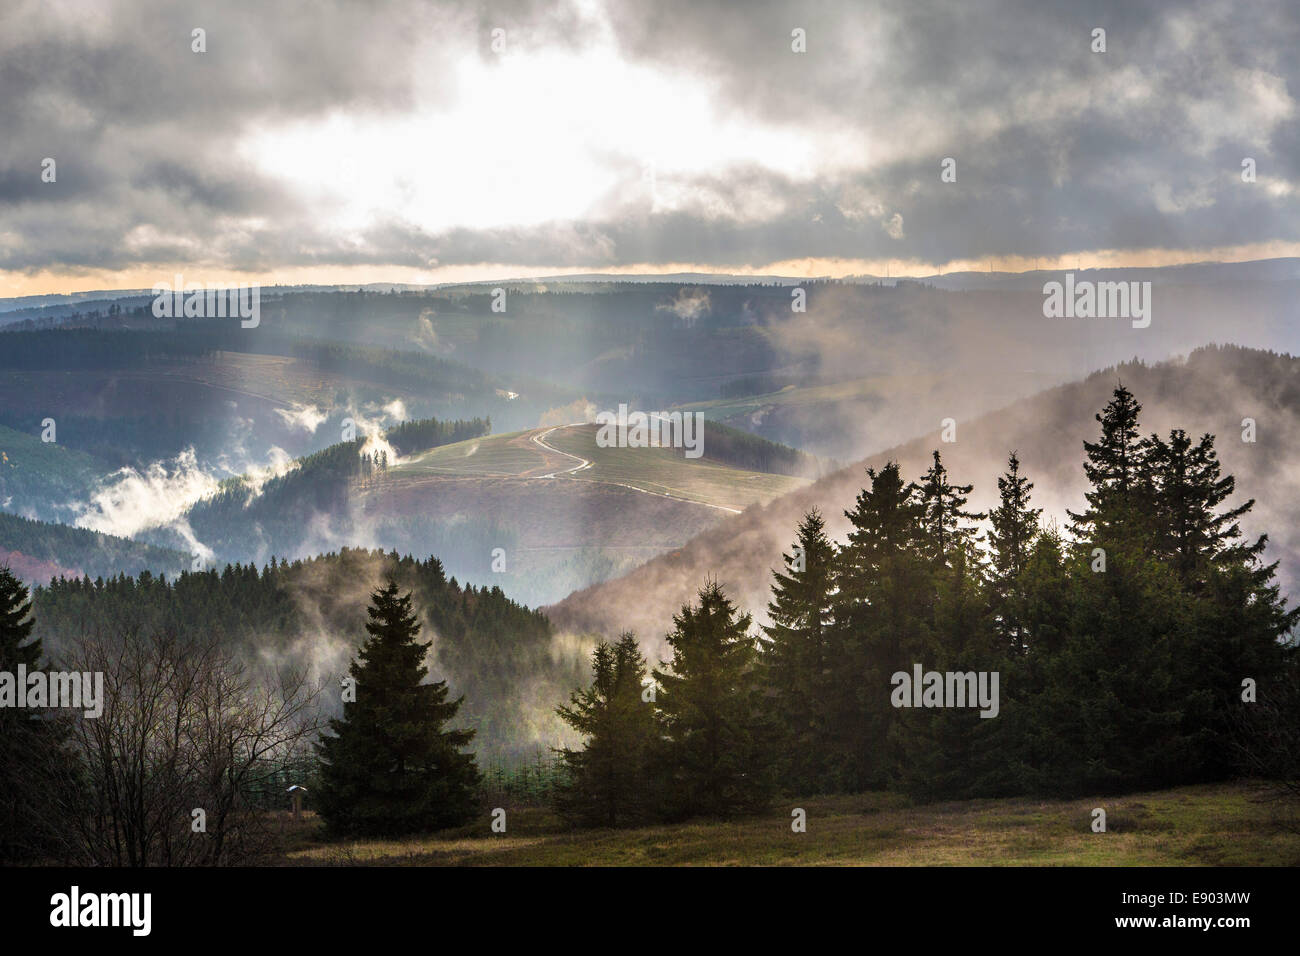 Sauerland, Central Mountain au nord de l'Allemagne de l'ouest, tôt le matin du brouillard en automne. Tempête, stormy clouds over mountain tops Banque D'Images